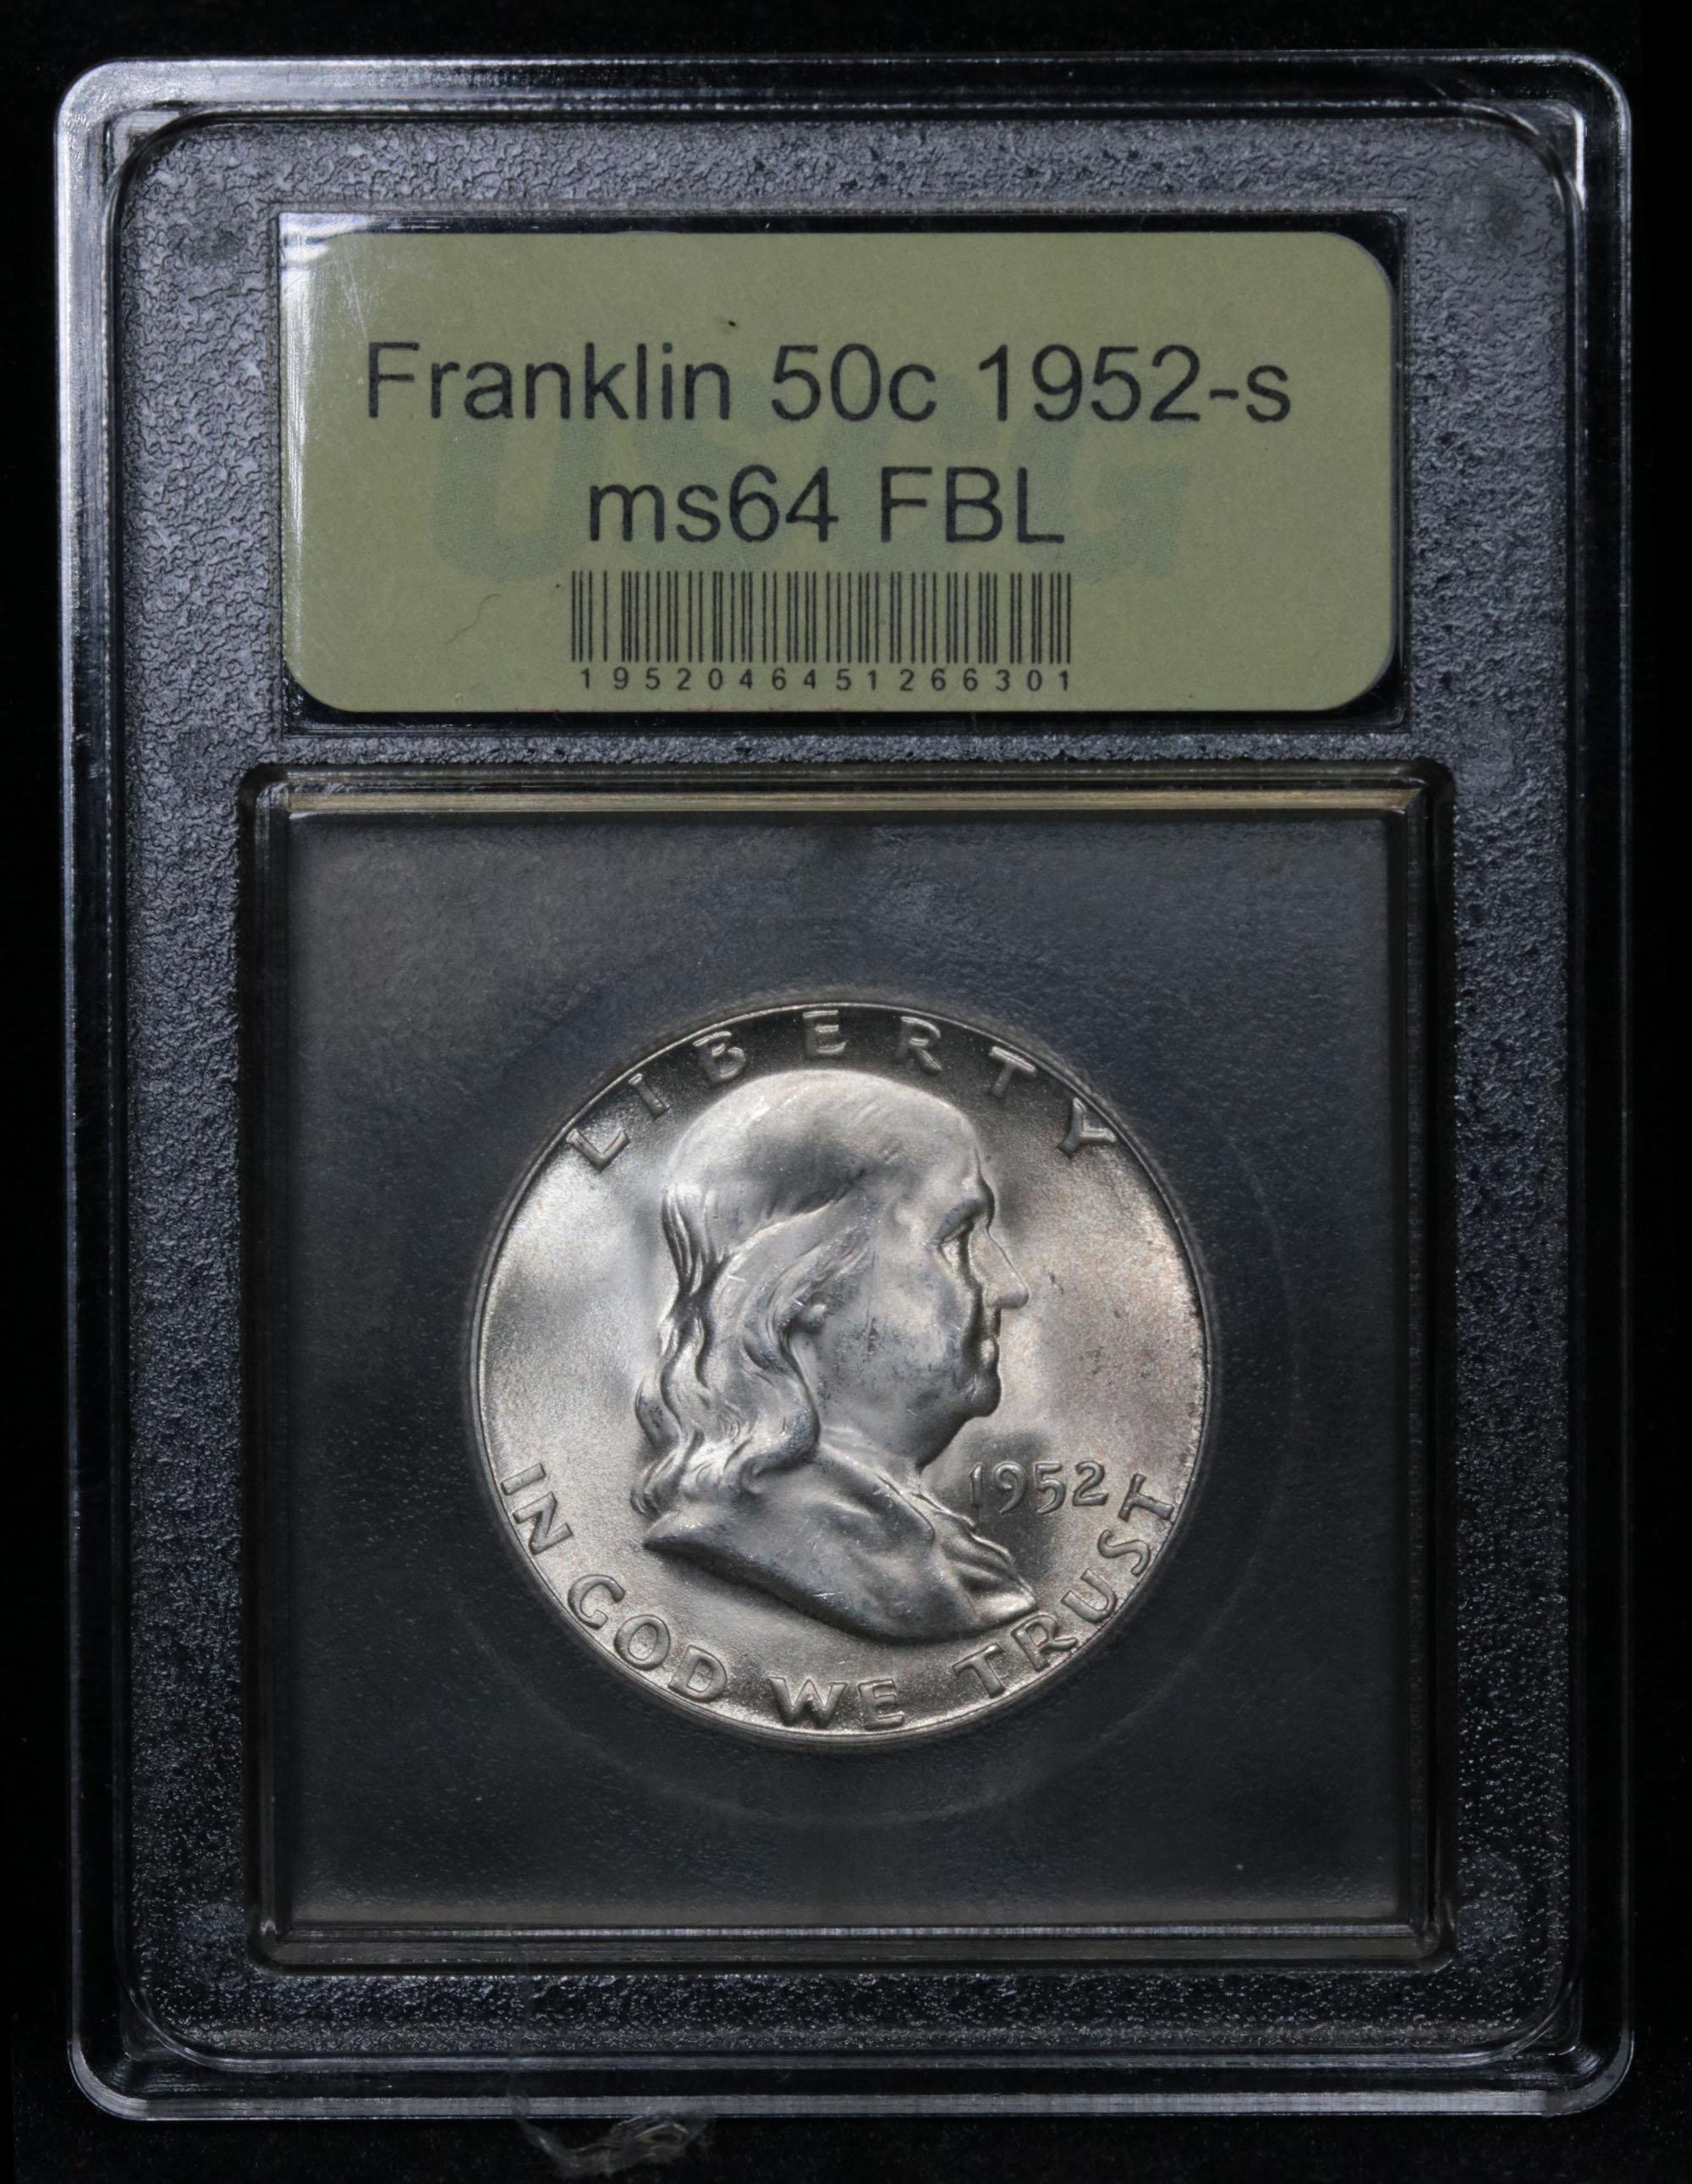 ***Auction Highlight*** 1952-s Franklin Half Dollar 50c Graded Choice Unc FBL by USCG (fc)